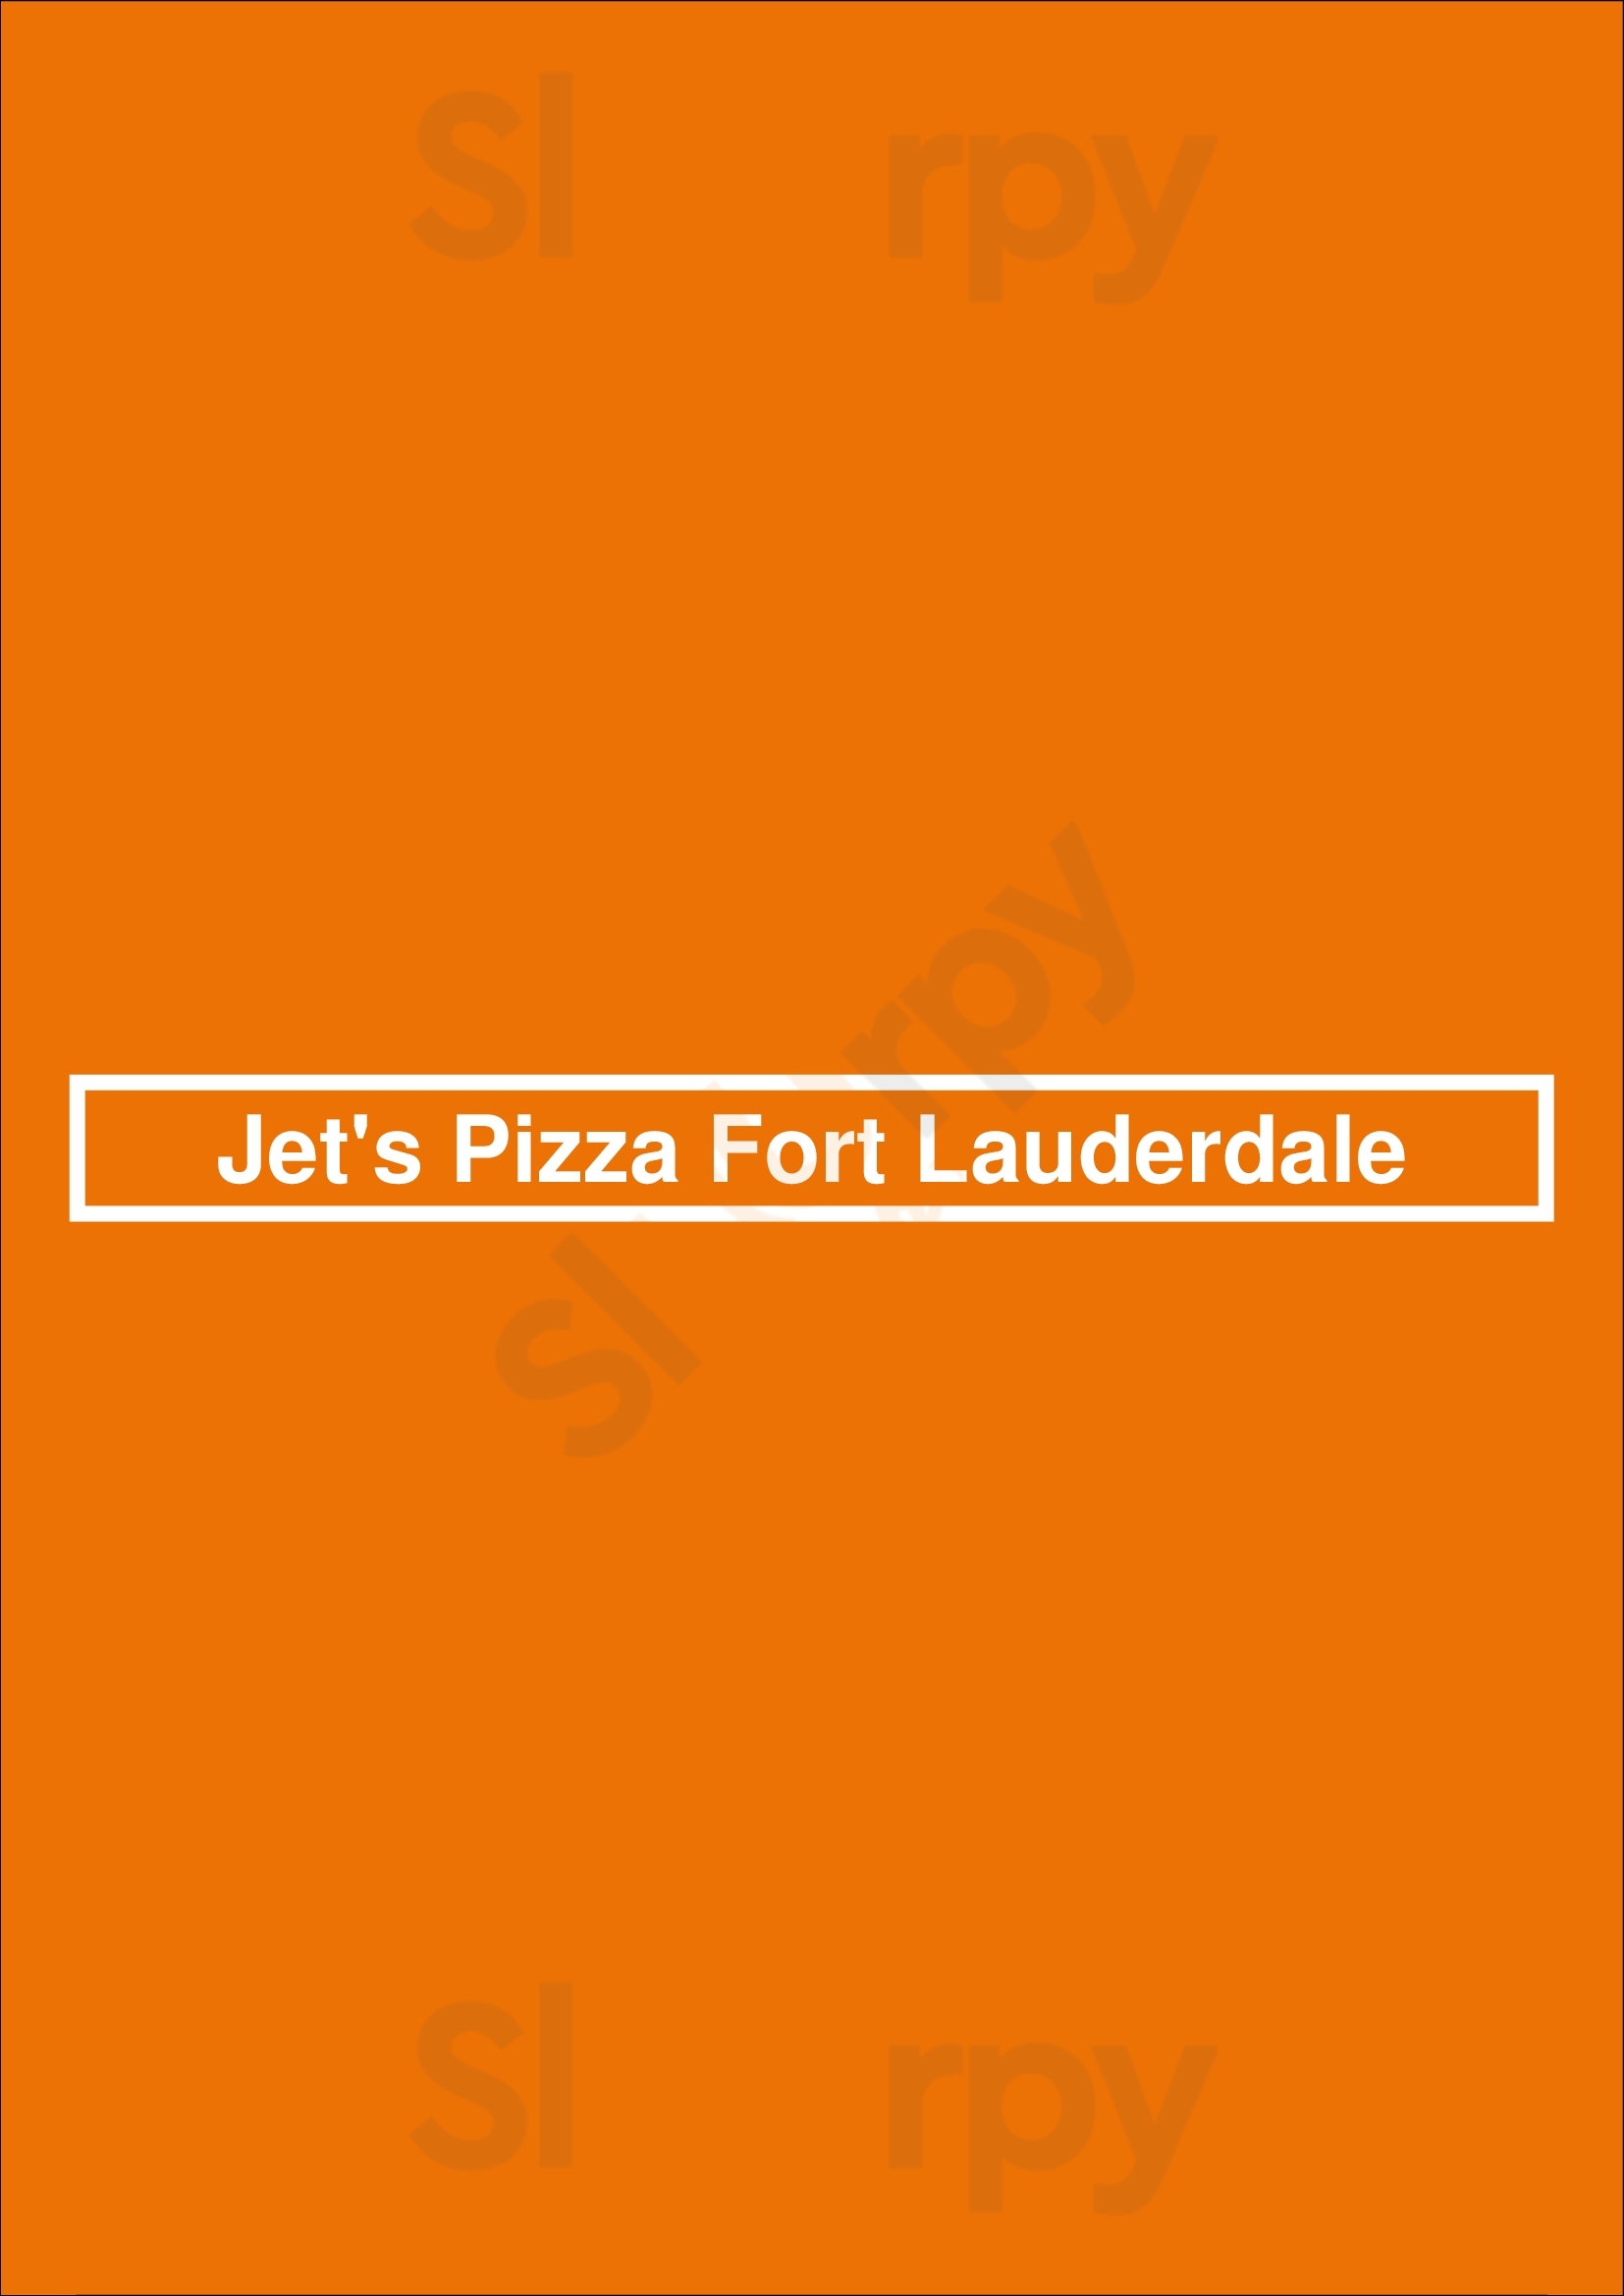 Jet's Pizza Fort Lauderdale Oakland Park Menu - 1